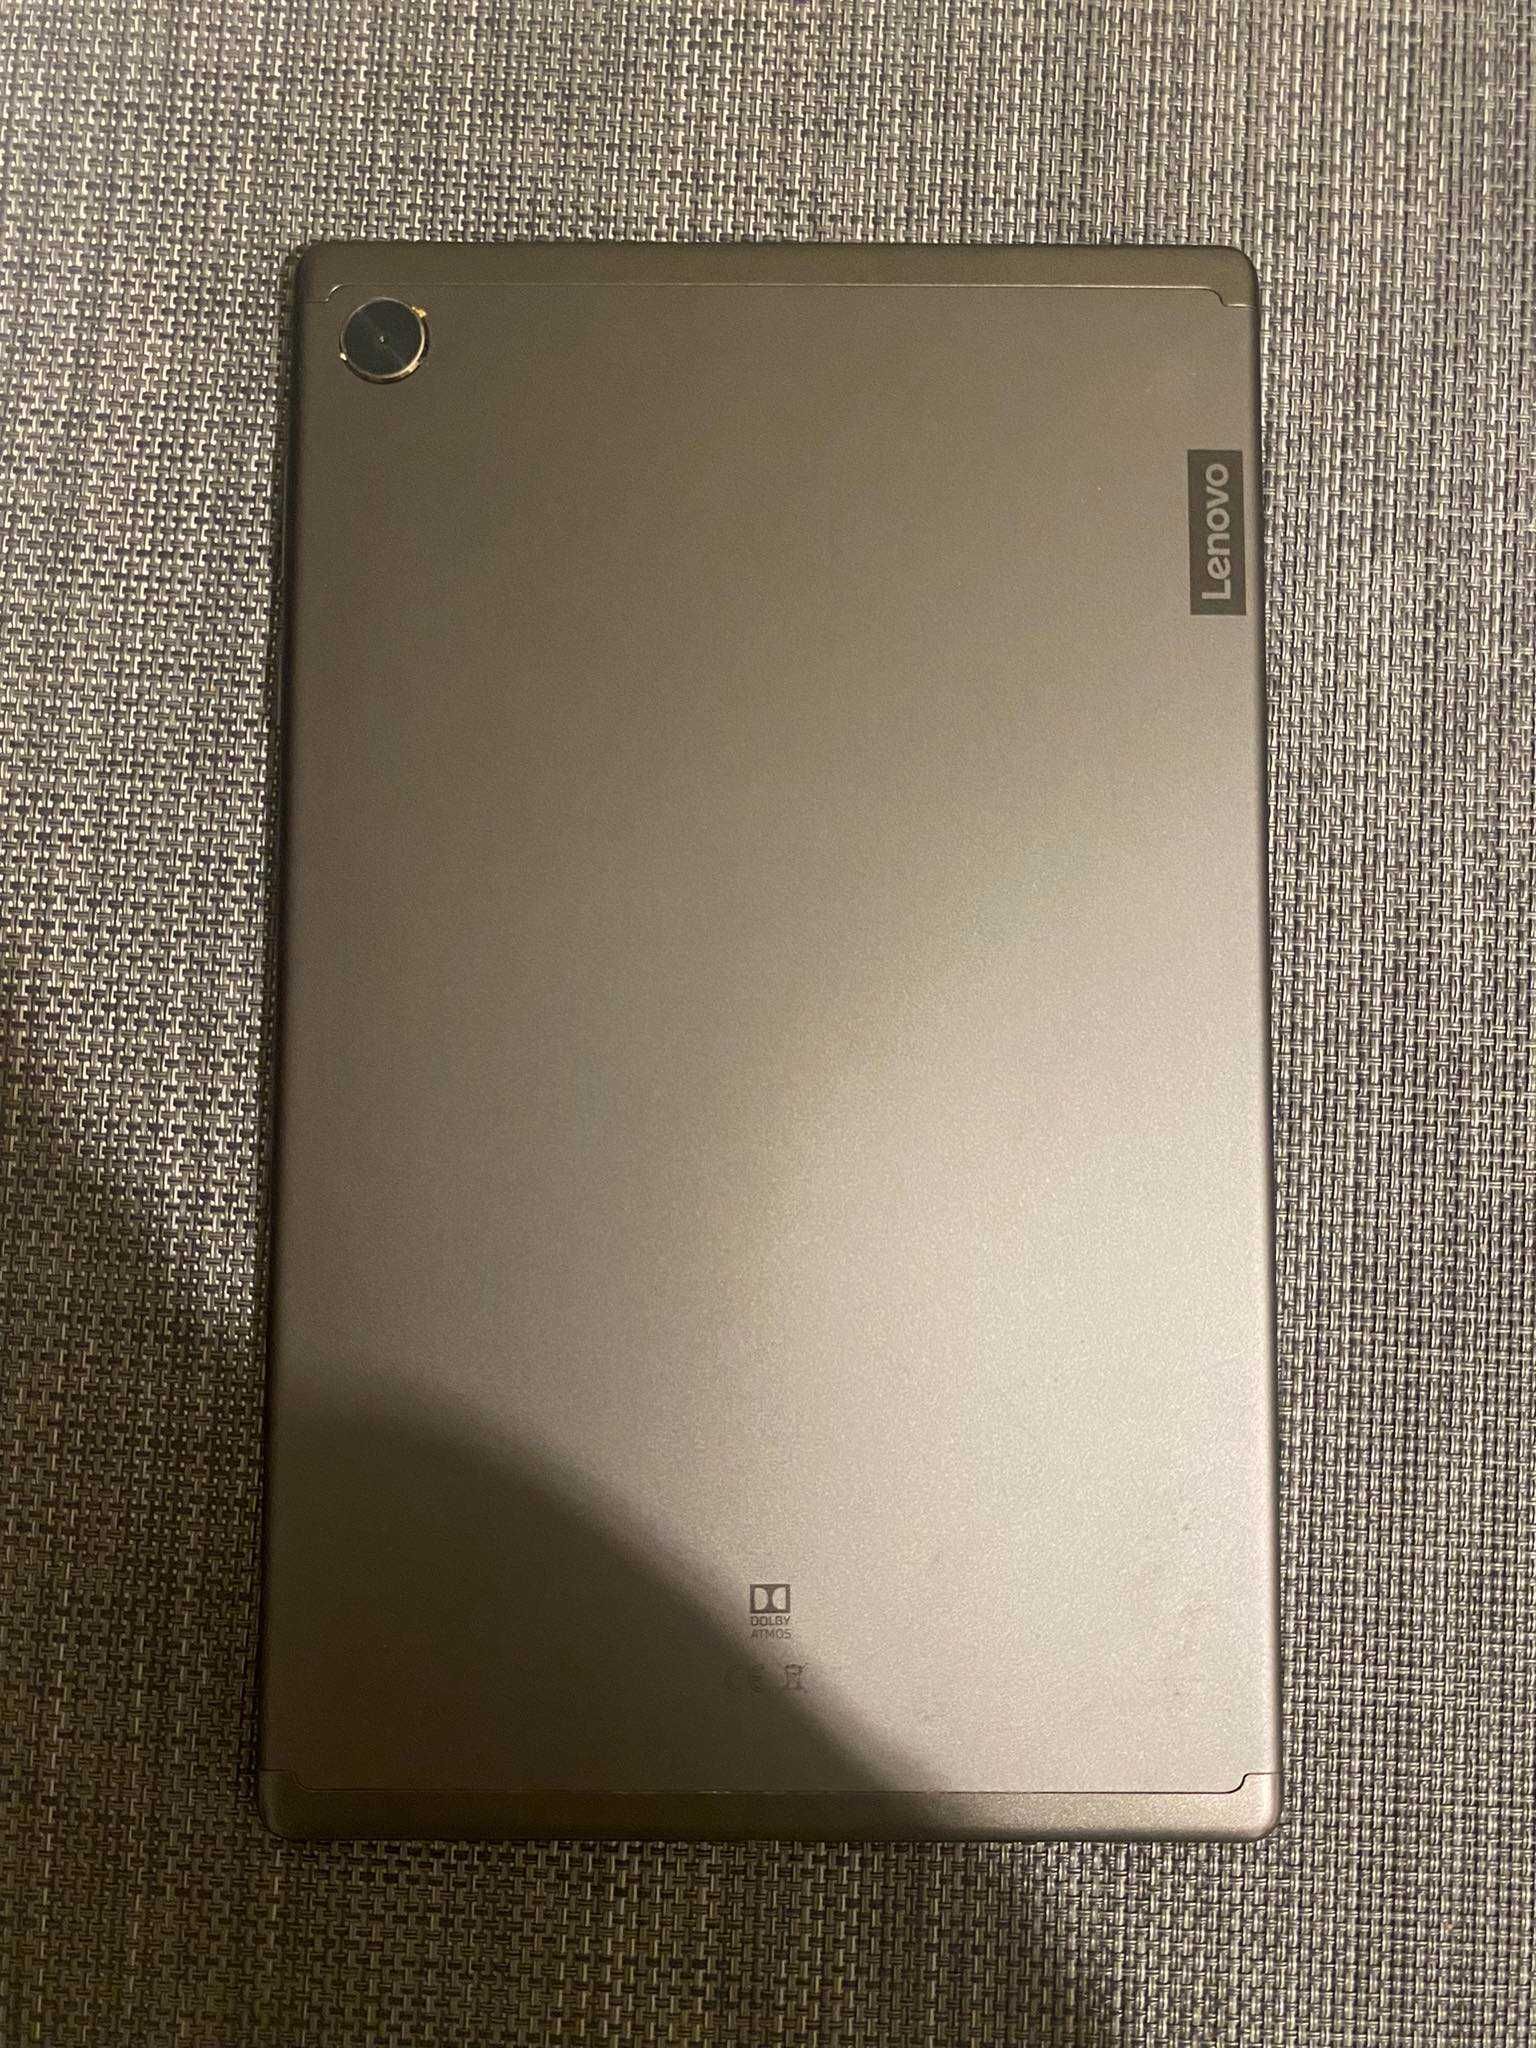 Tablet Lenovo M10 FHD Plus dodatkowo  etui z klawiaturą i myszką